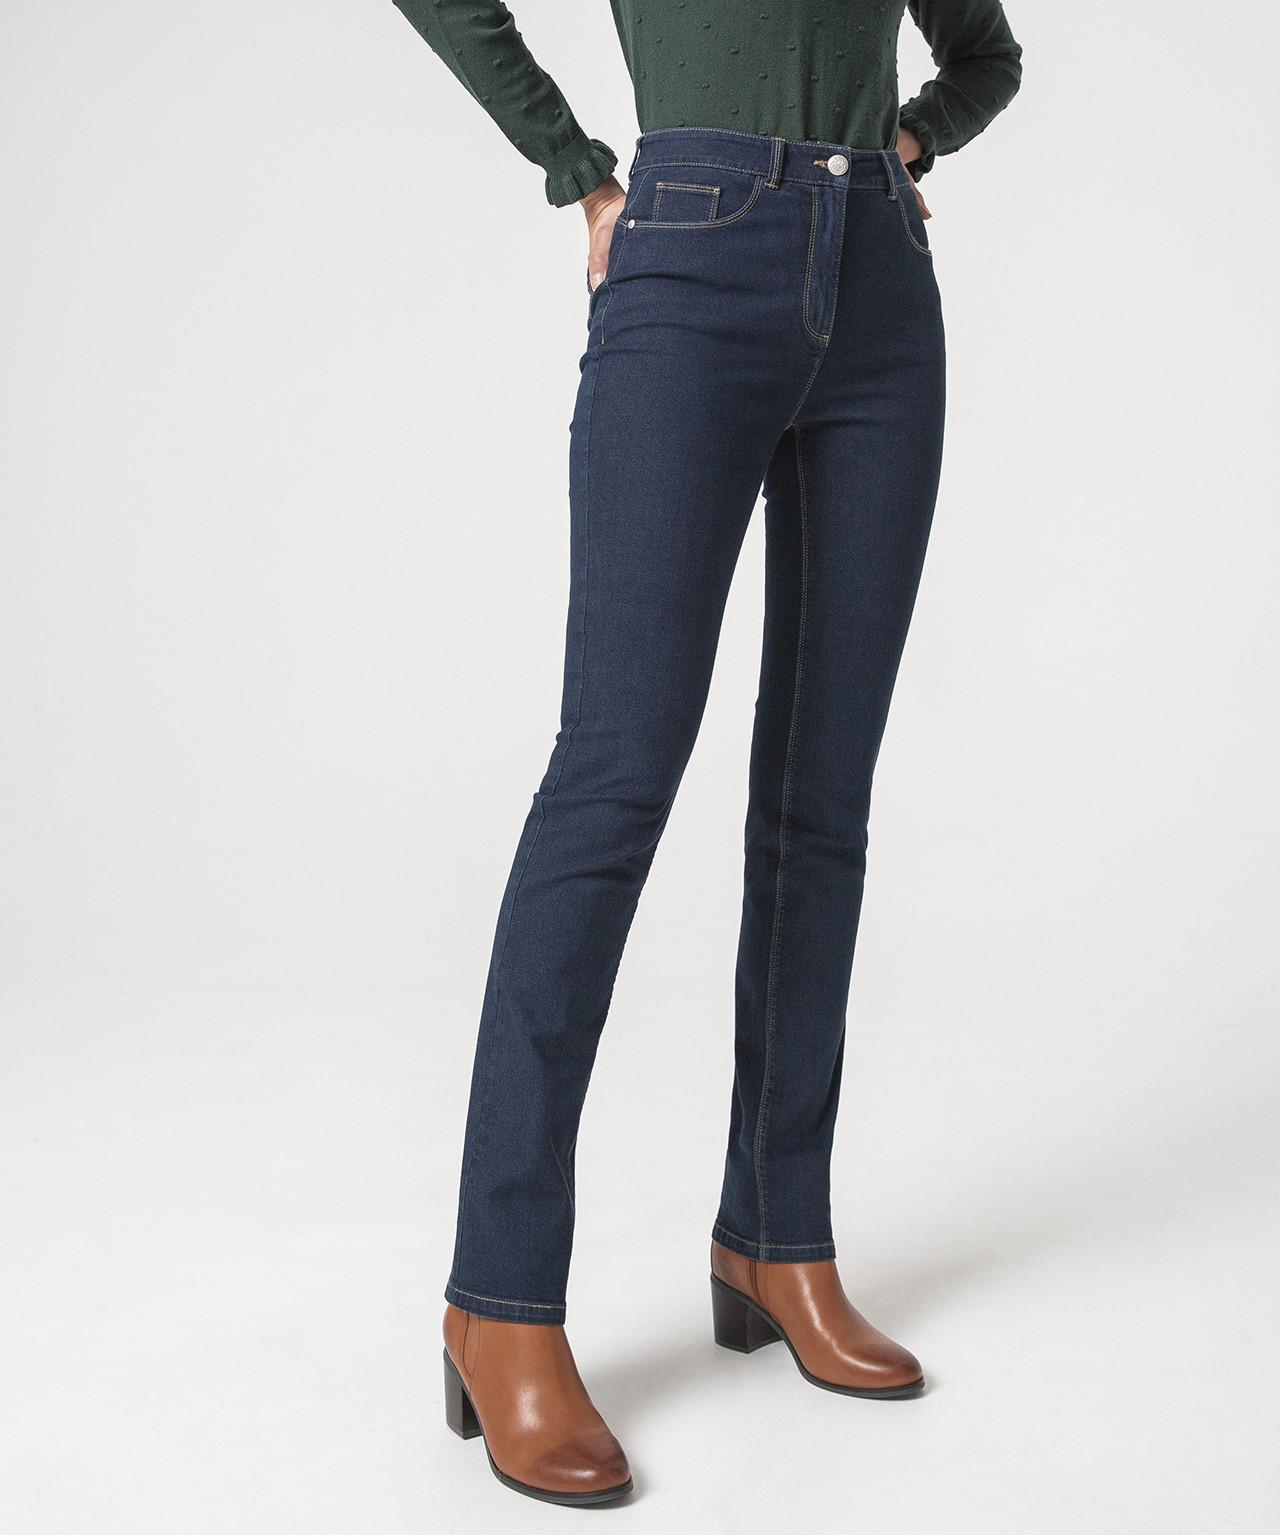 Jeans Mit Hoher Taille, Perfect Fit By , 2 Längen. Damen Blau 40 von Damart